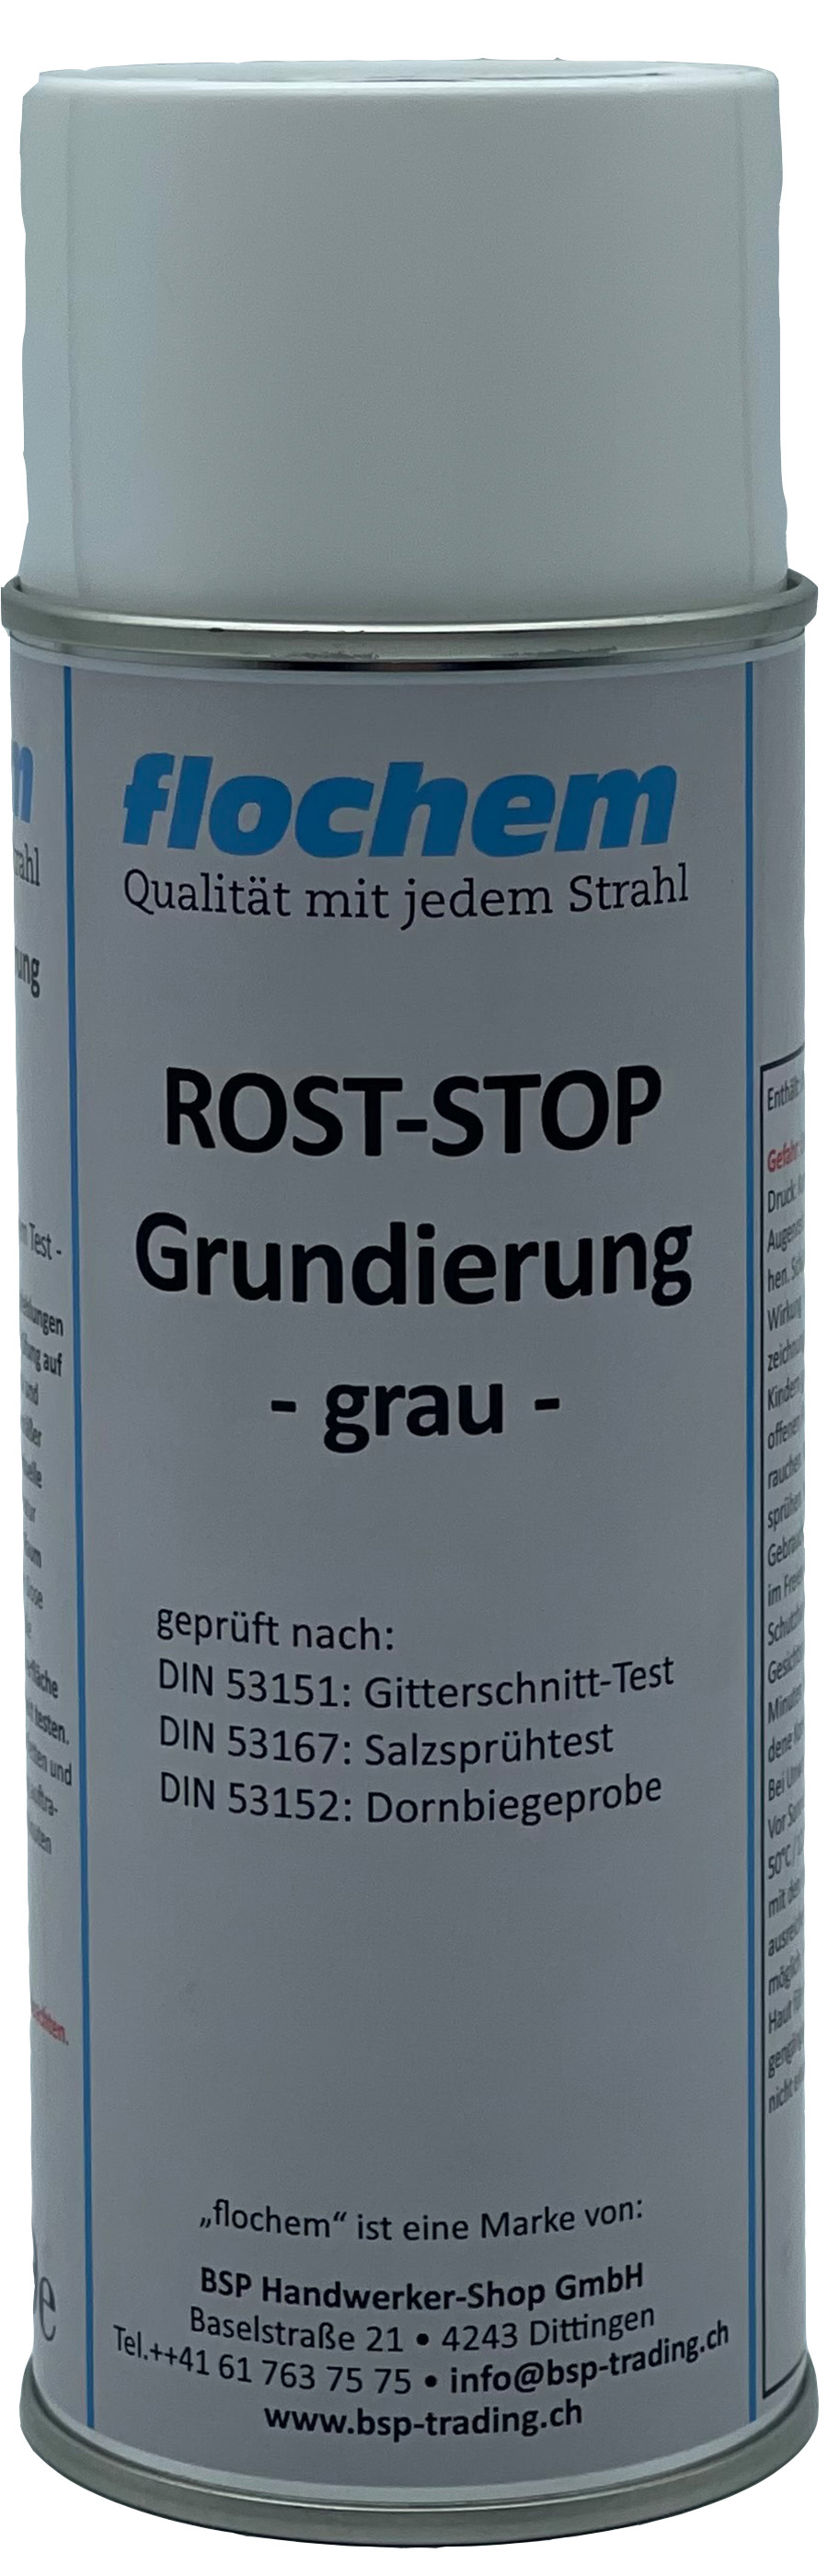 ROST-STOP Grundierung grau 400ml